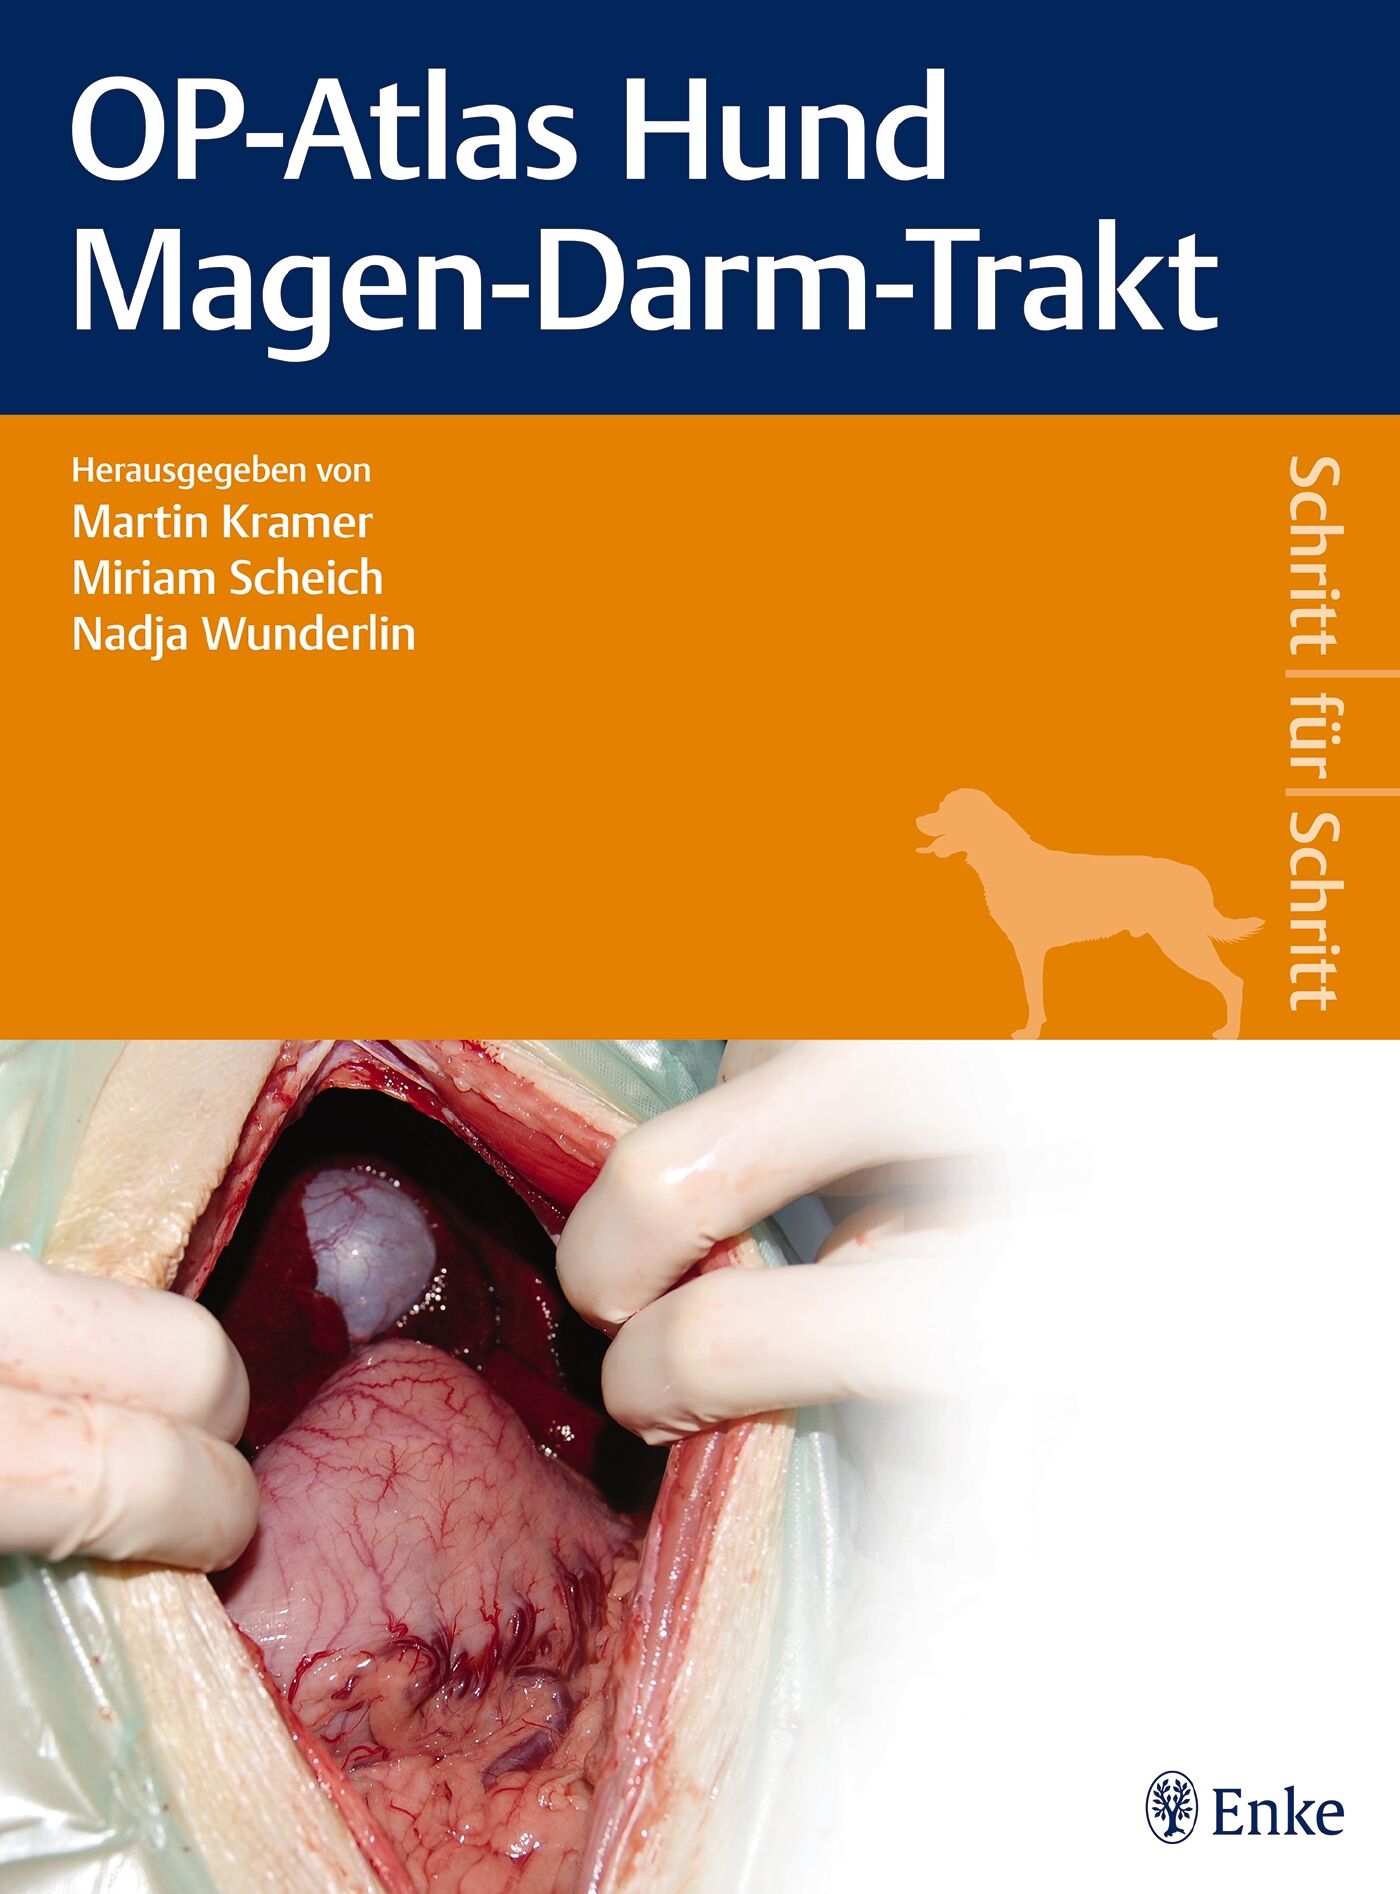 OP-Atlas Hund Magen-Darm-Trakt, 9783132400405